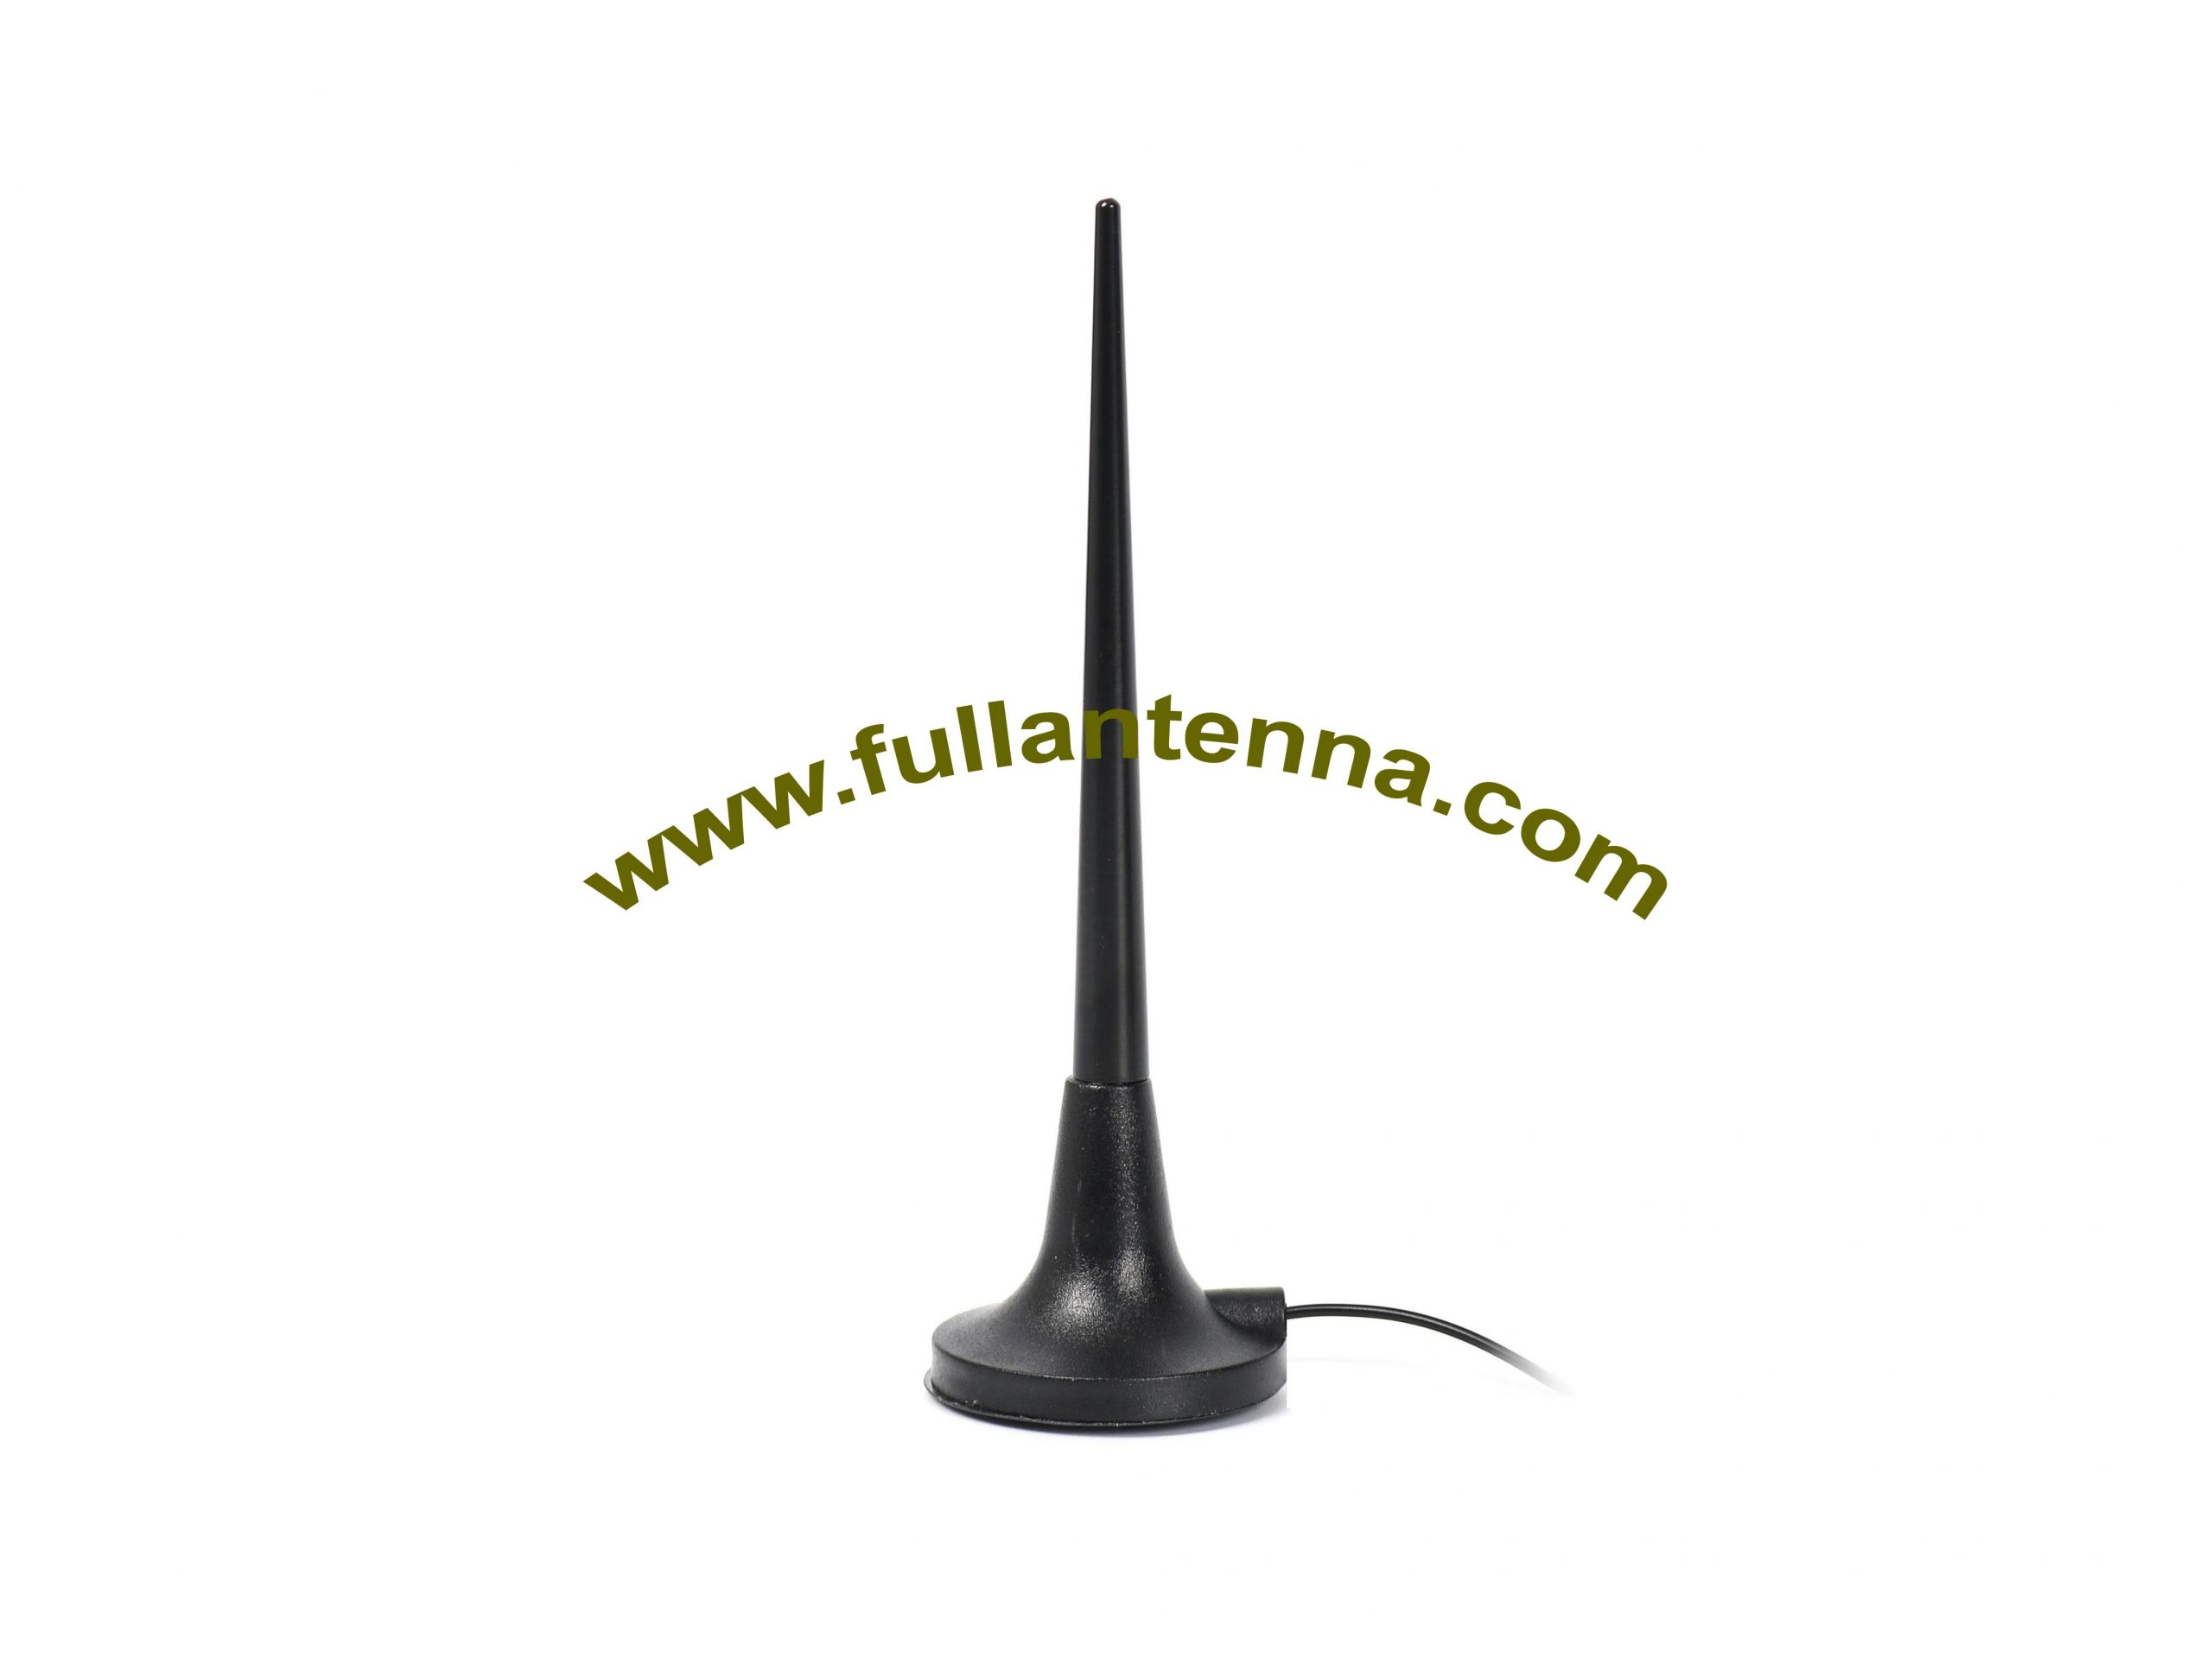 P / N: FAGSM.12, zewnętrzna antena GSM, metalowy bagnet do montażu magnetycznego